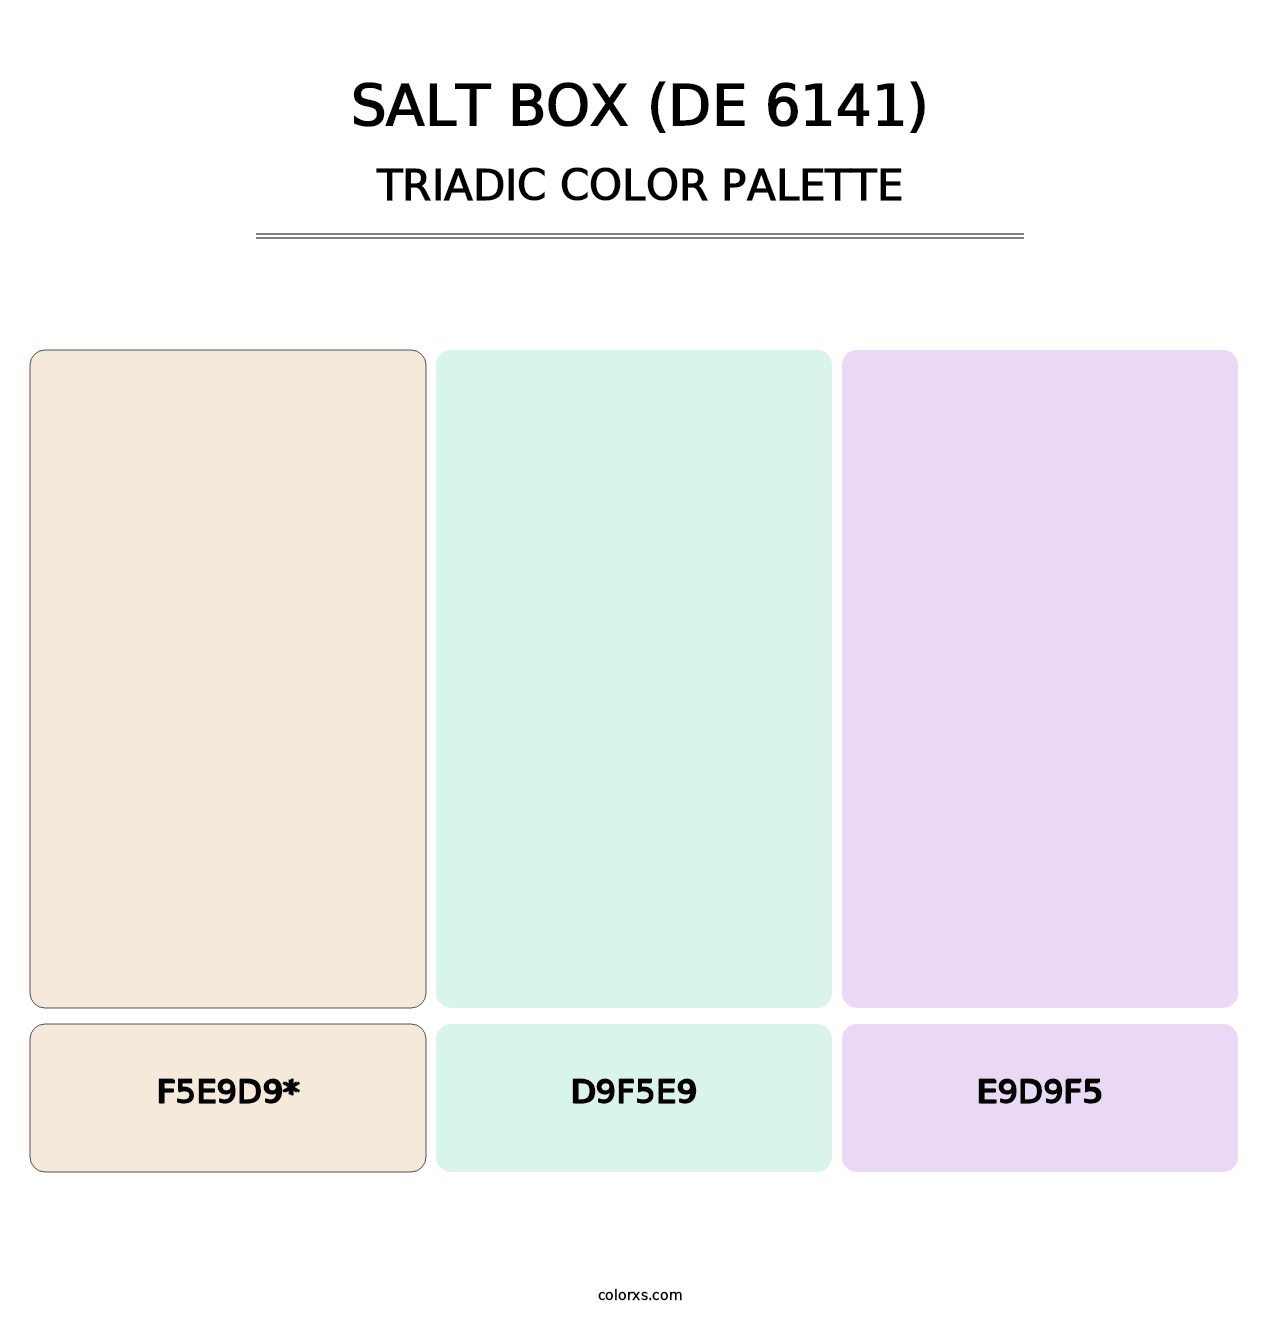 Salt Box (DE 6141) - Triadic Color Palette